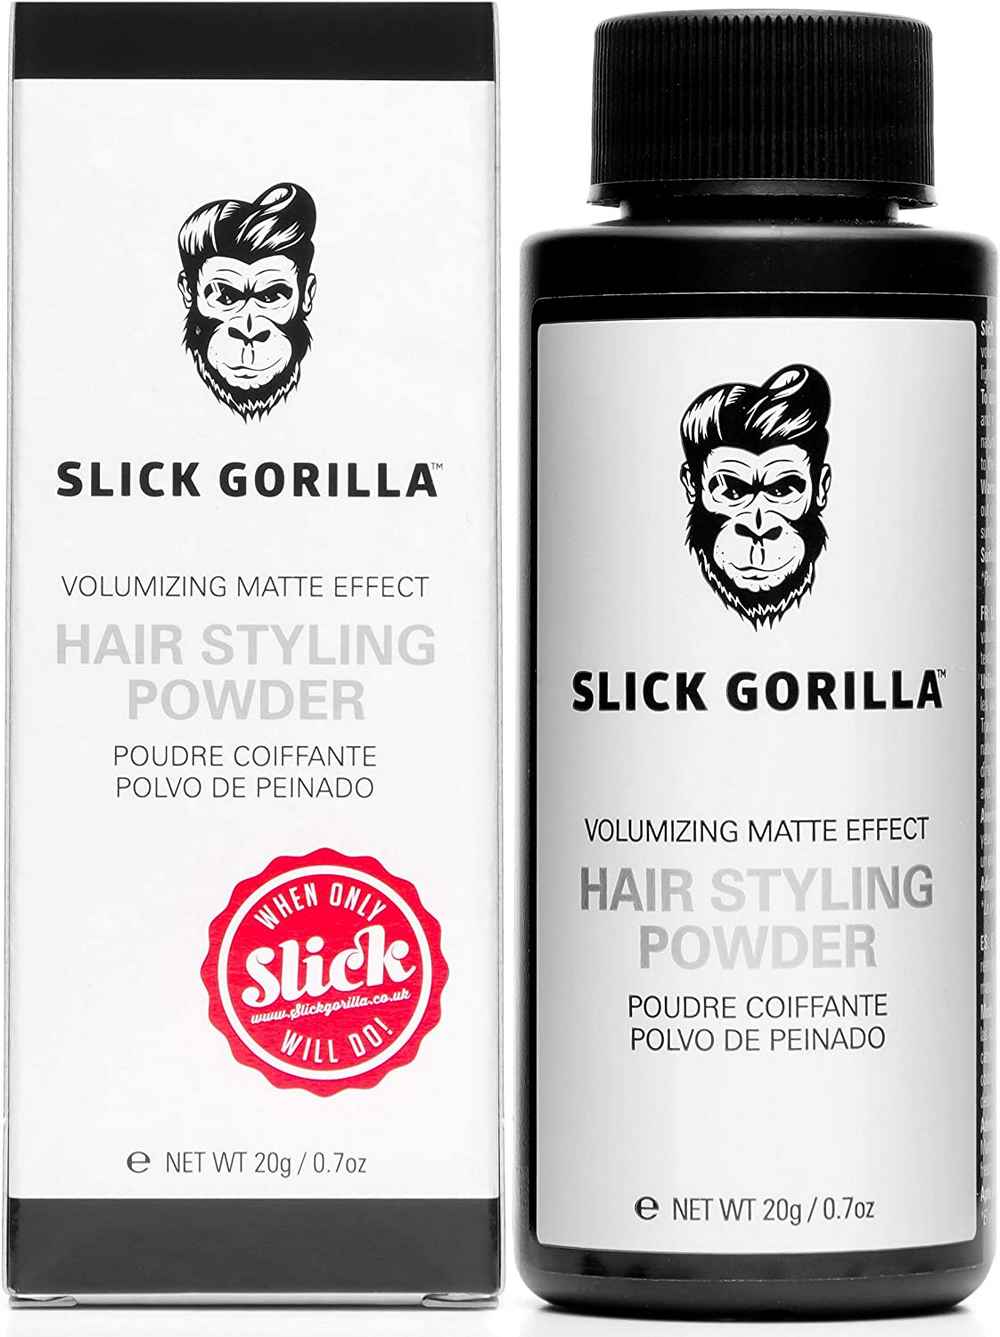 polvos-para-dar-volumen-al-pelo-slick-gorilla-hair-styling-powder.jpg